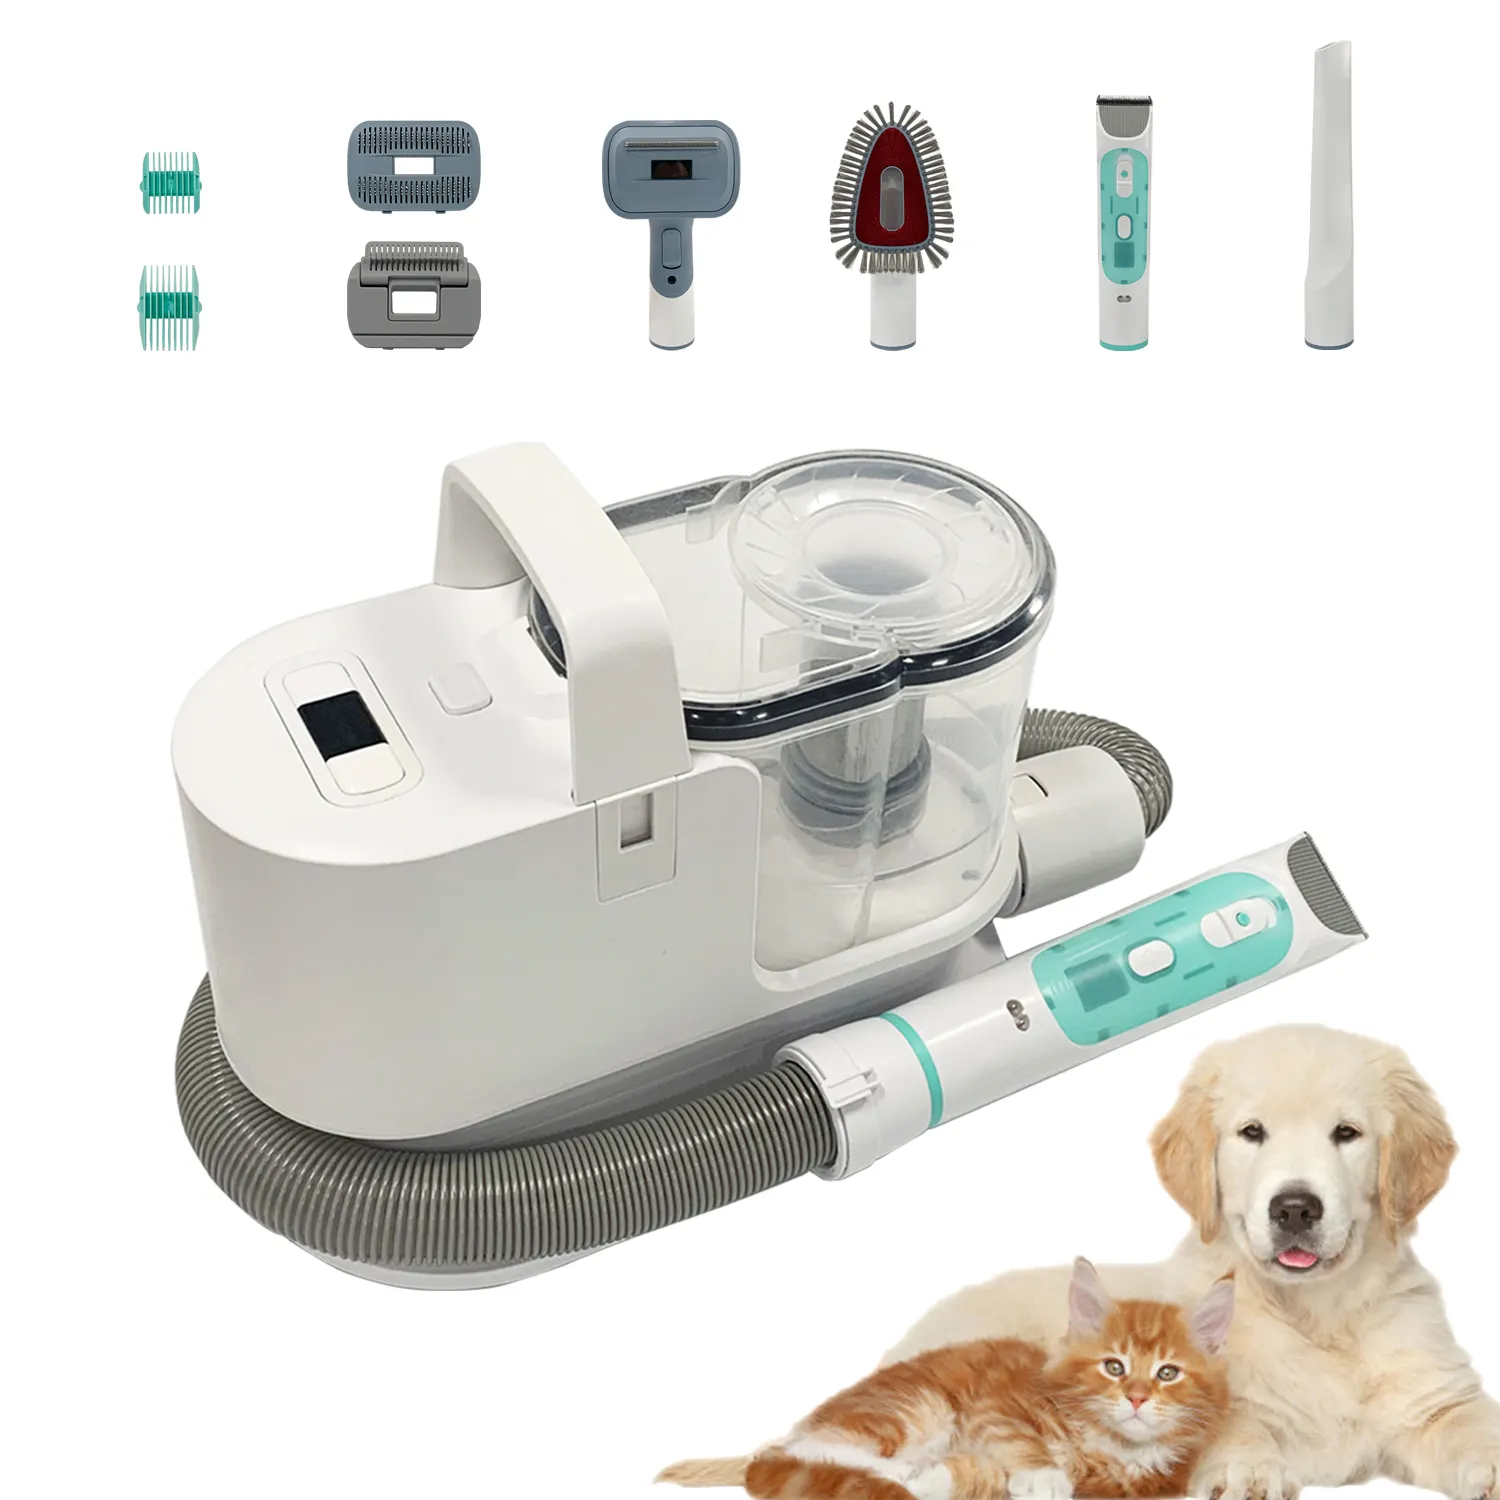 Kit de aseo de mascotas para el hogar, cortadora de pelo para perros y gatos, aspiradora, superventas